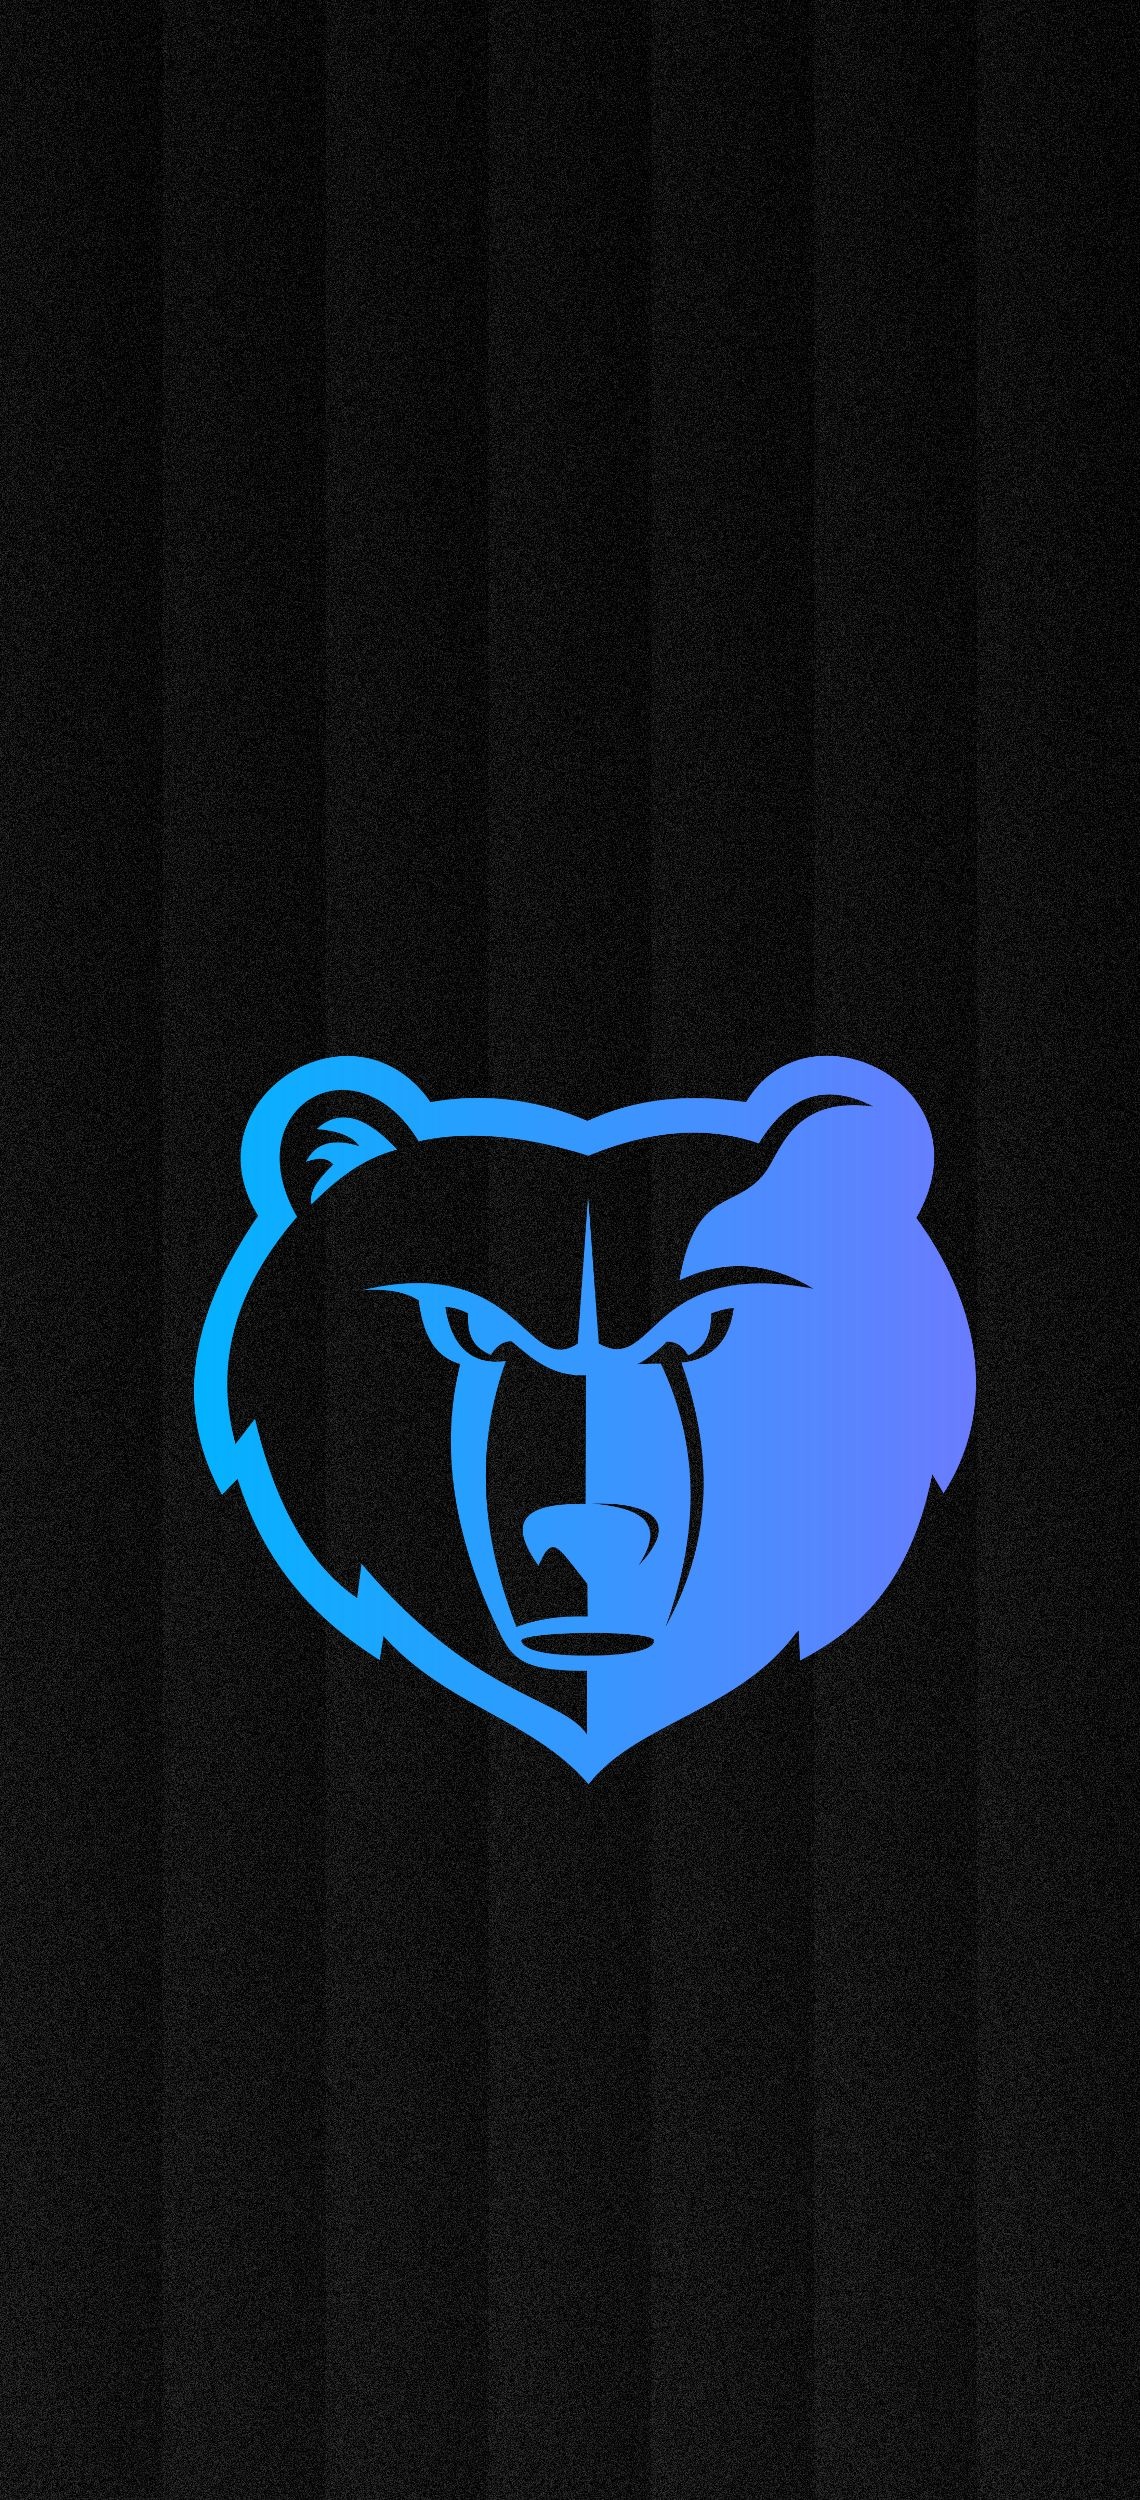 Memphis Grizzlies, Logo wallpapers, Desktop backgrounds, Grizzlies branding, 1140x2500 HD Handy